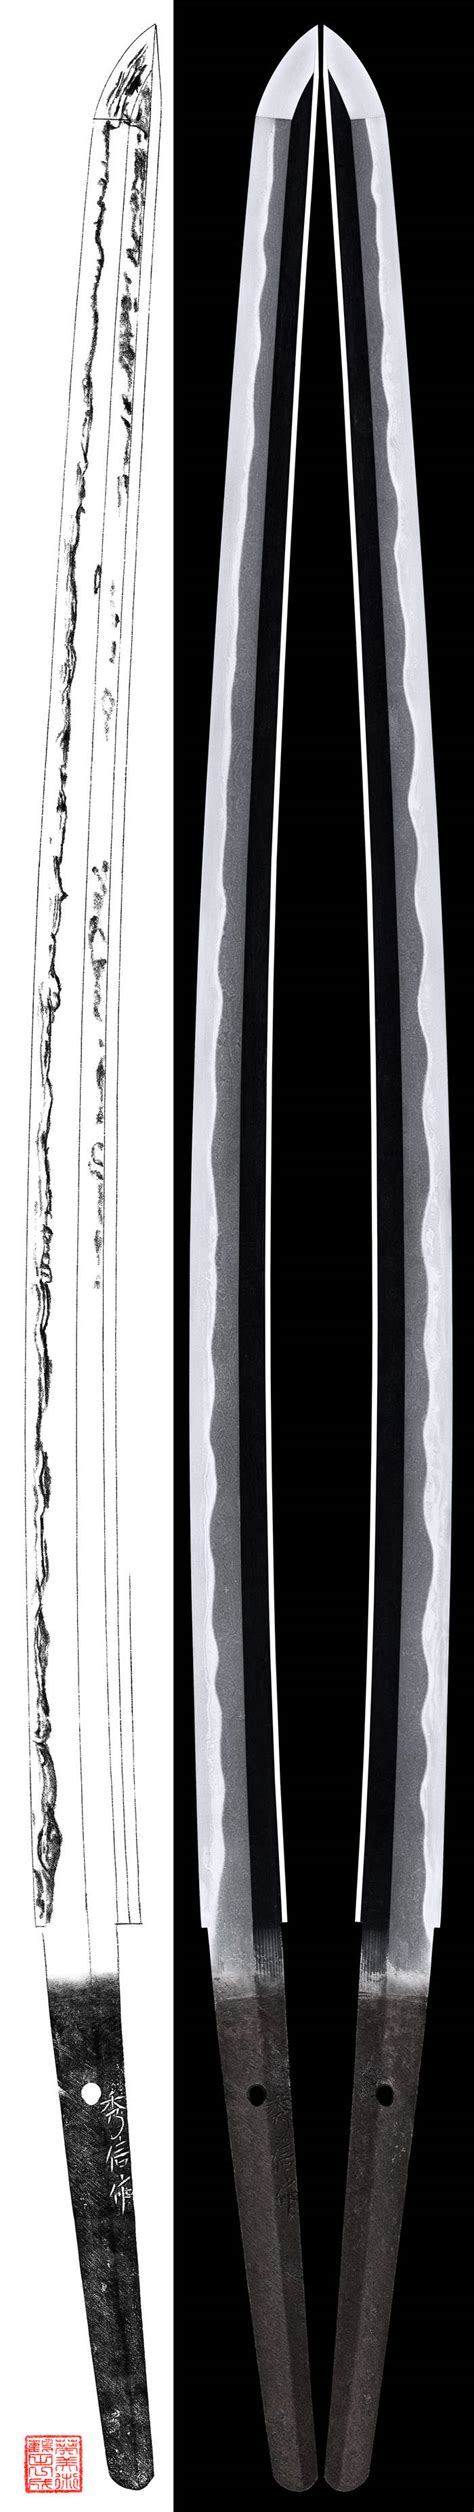 刀：秀信作（土佐）_打刀 太刀 Katana&Tachi - 葵美术在中国的唯一直营代表机构 |日本刀販売|日本刀.刀剣販売|日本古董刀|进口日本刀